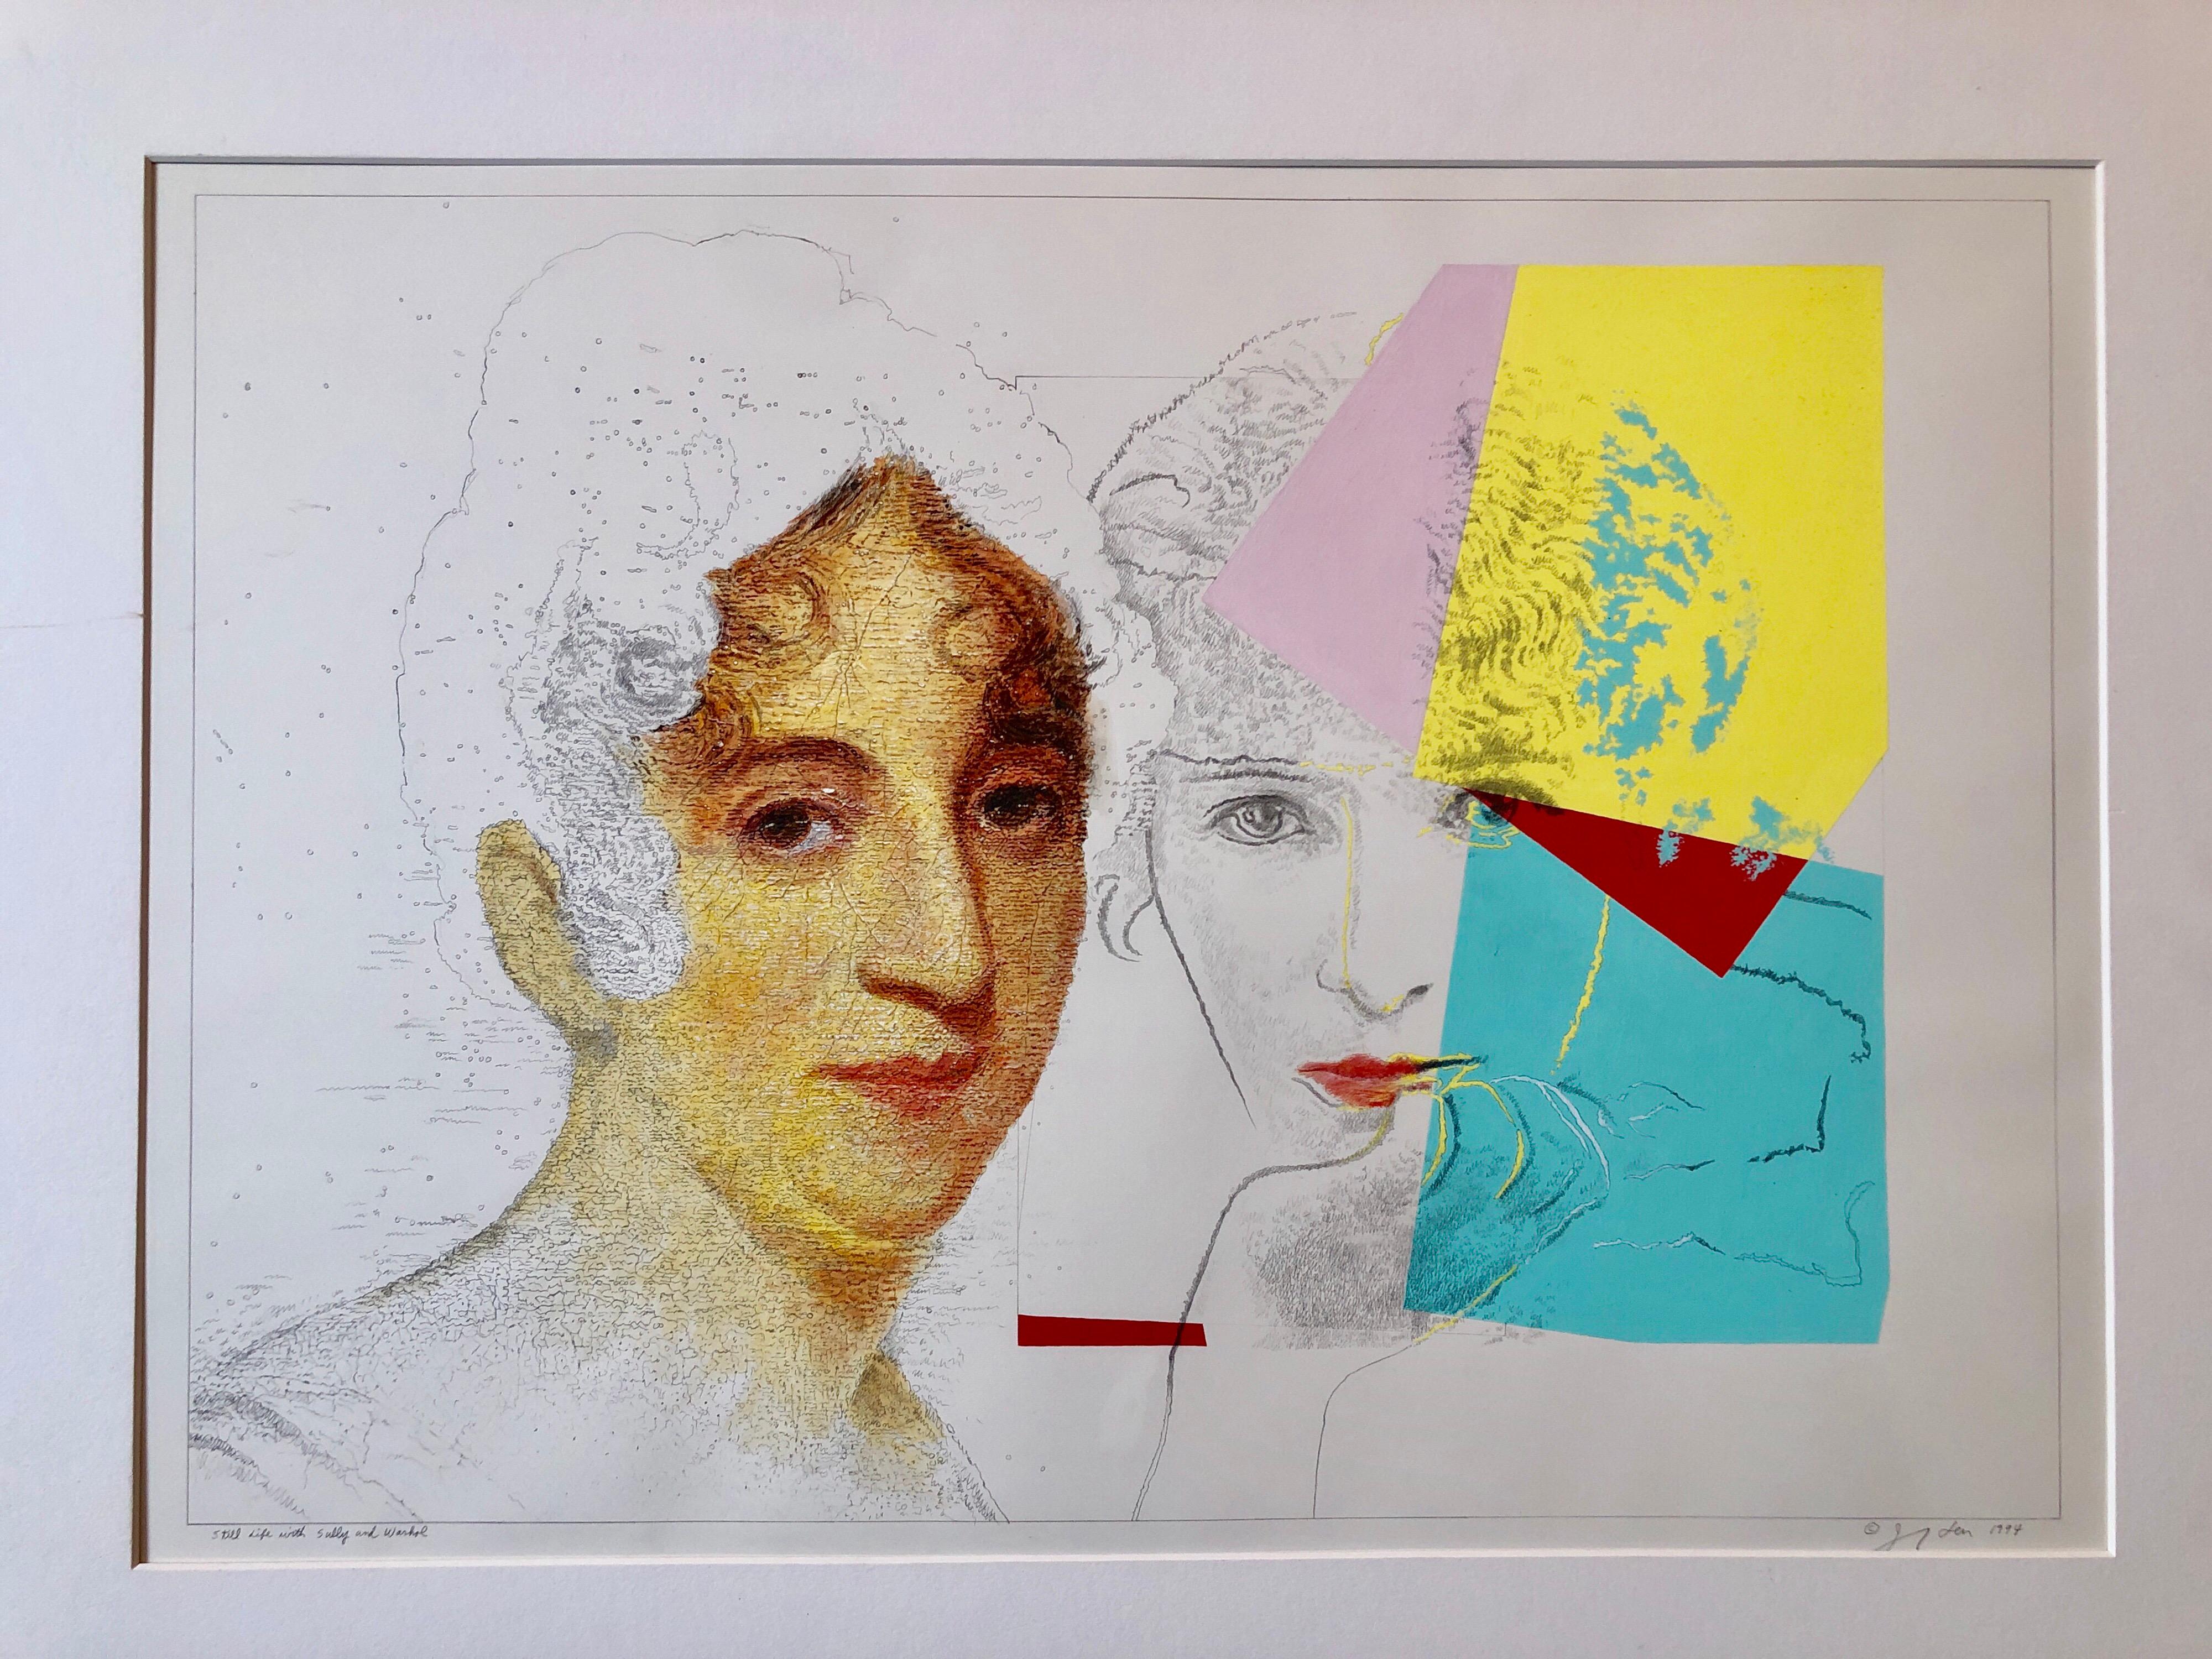 Stilleben mit (Thomas) Sully und (Andy) Warhol, (französische Schauspielerin Sarah Bernhardt (1844-1923))
Handsigniert mit Bleistift, datiert 1994
trägt ein Label der Galerie OK Harris Gallery in New York City


Josef Alan Levi (1938) ist ein